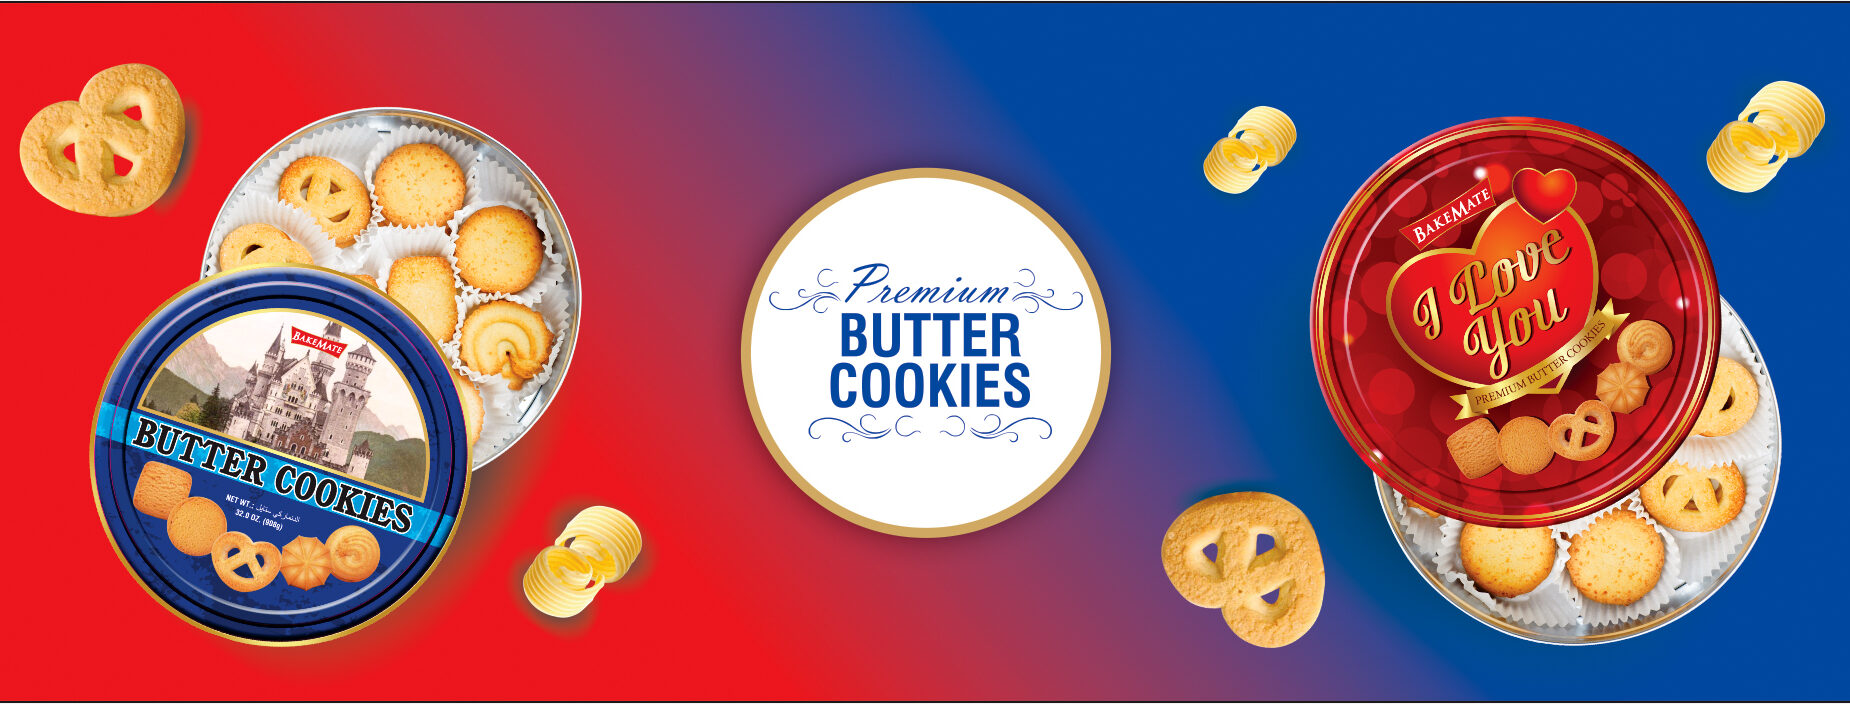 Premium Butter Cookies